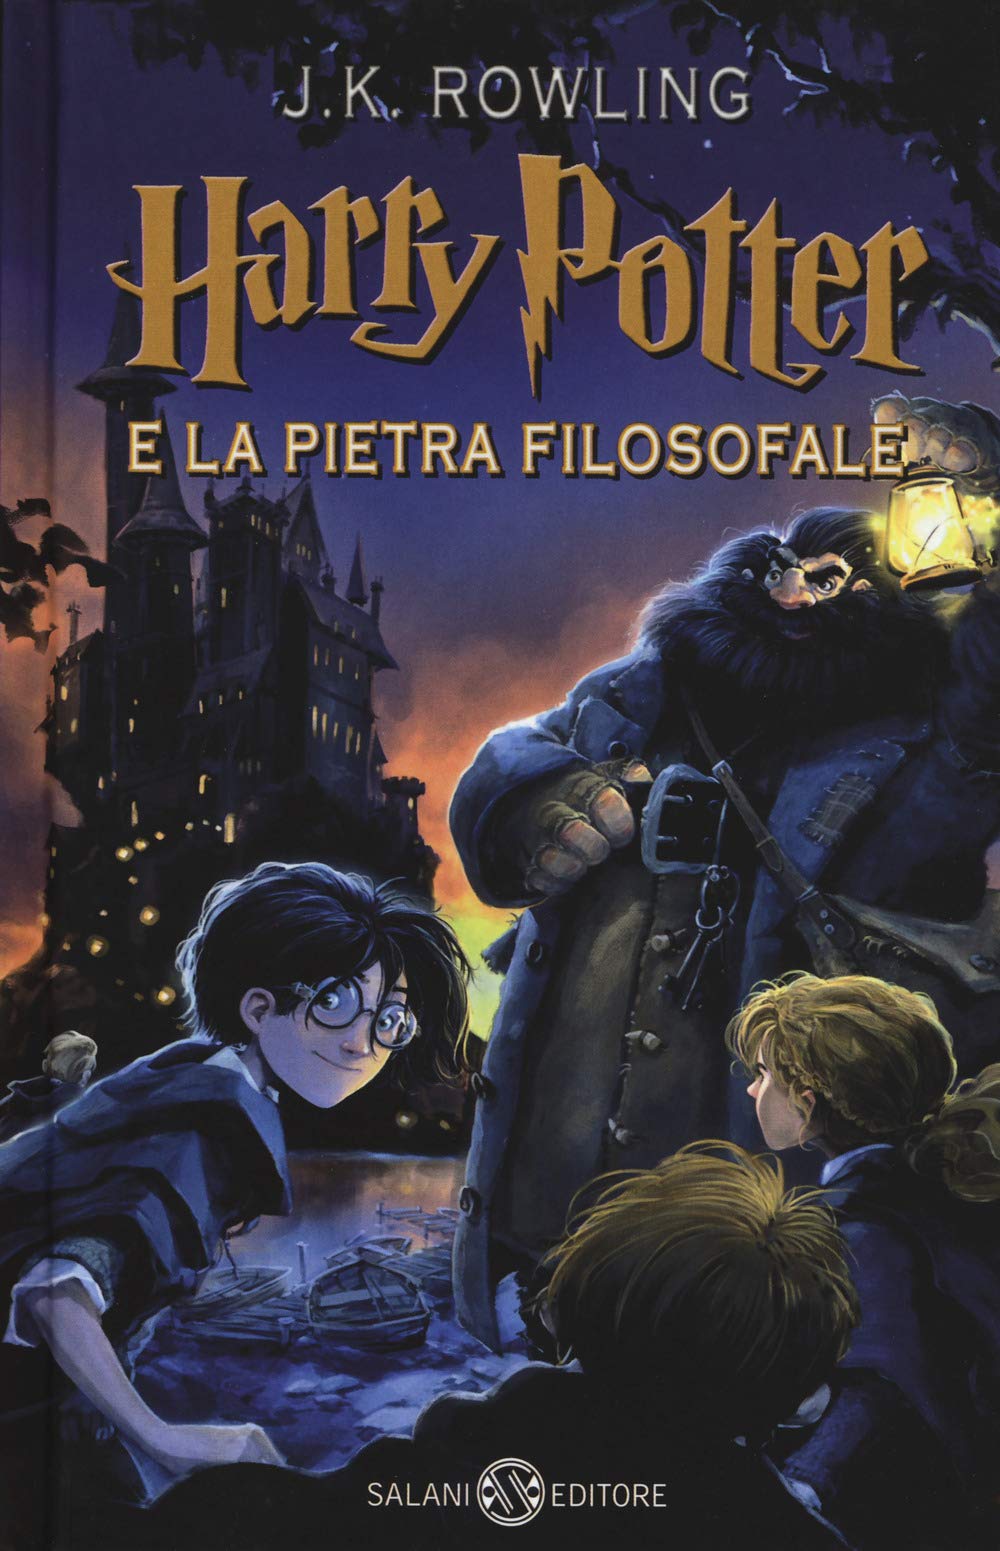 Harry Potter e la Pietra Filosofale, J.K. Rowling (9+) - Piccoli libri